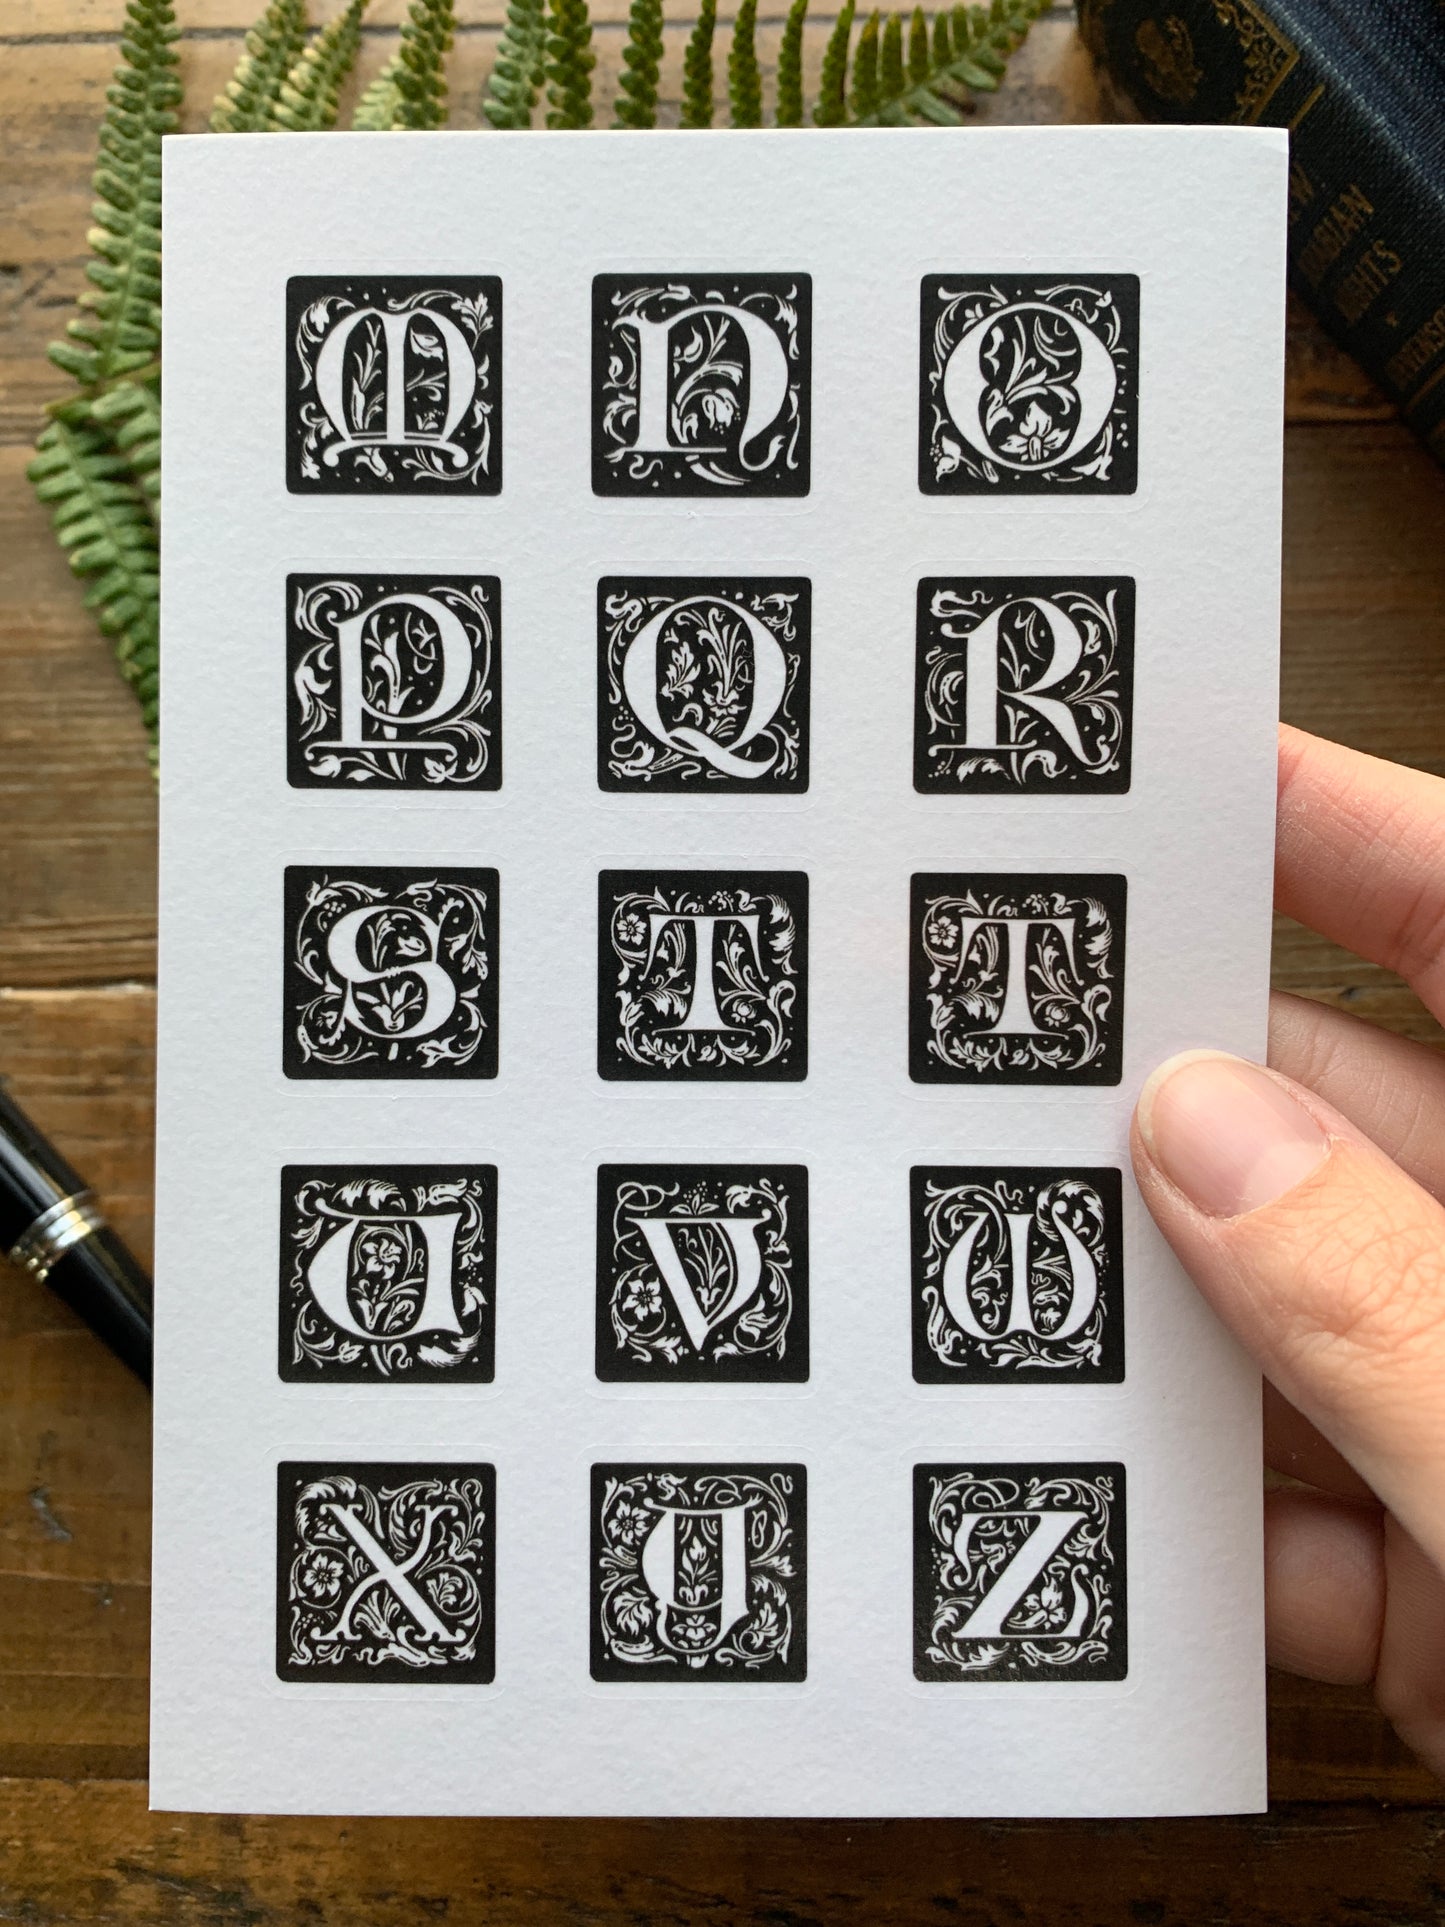 Large illuminated letters sticker sheet set - Black